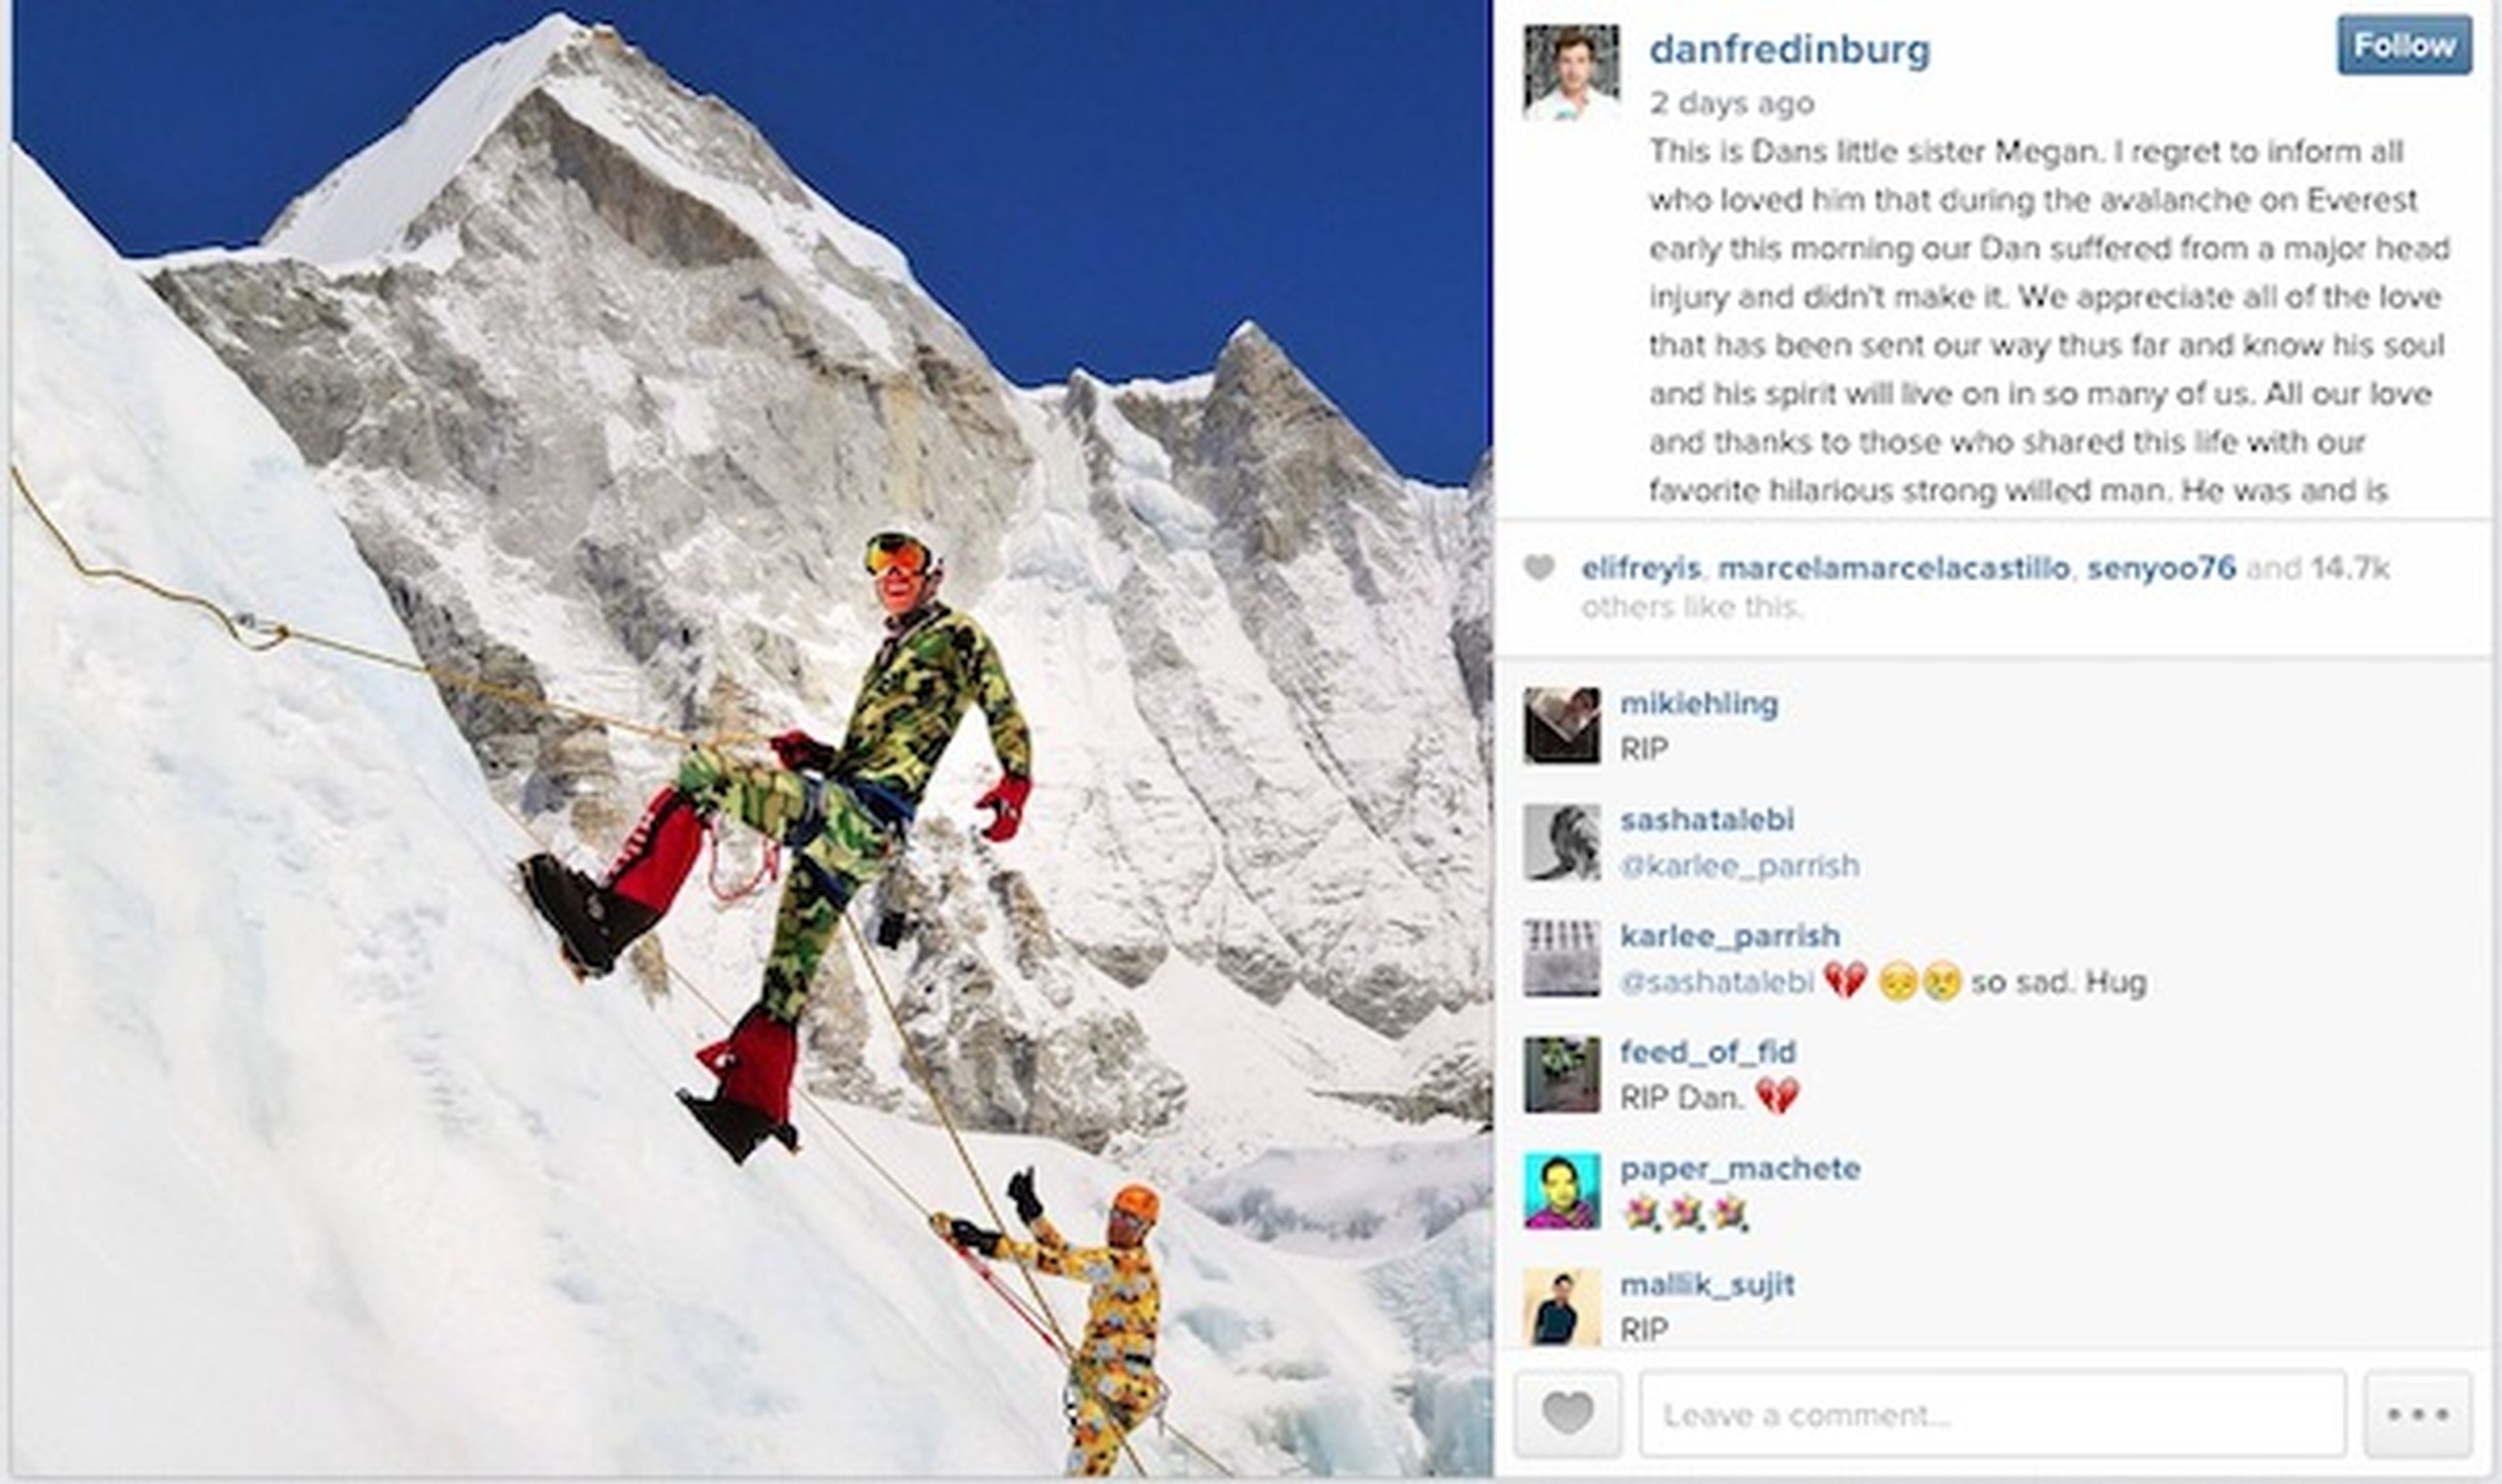 Hermana de Fredinburg anuncia fallecimiento en Instagram